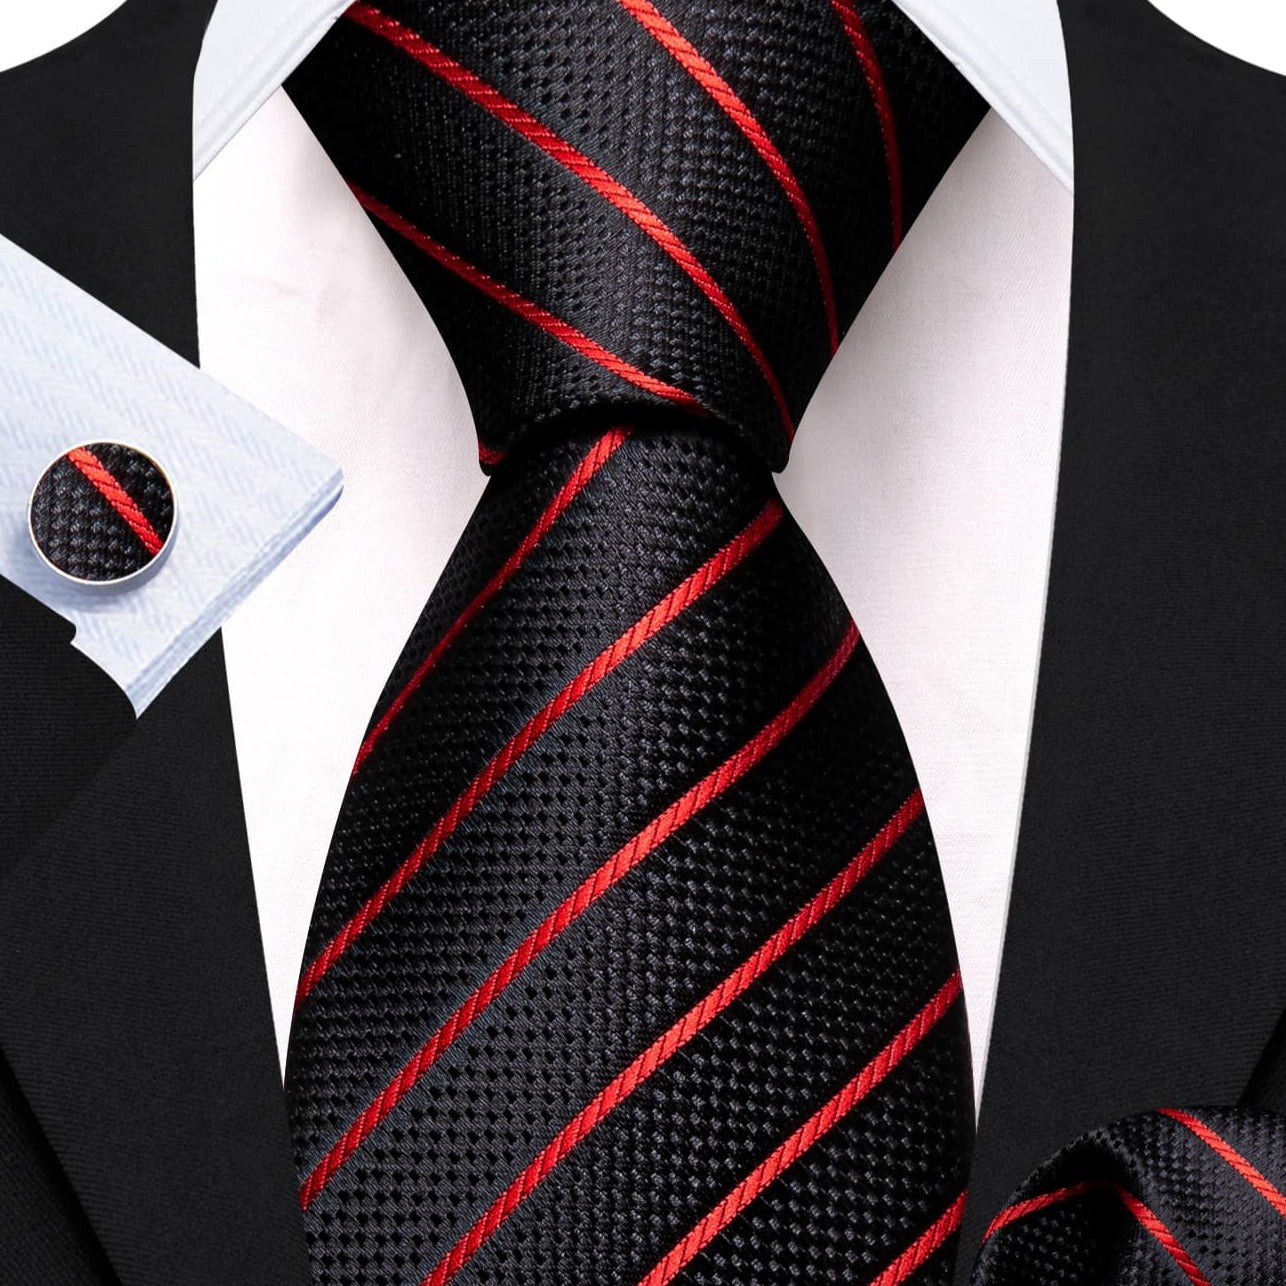  Black Tie Red Lines Striped Necktie Men's Tie Set